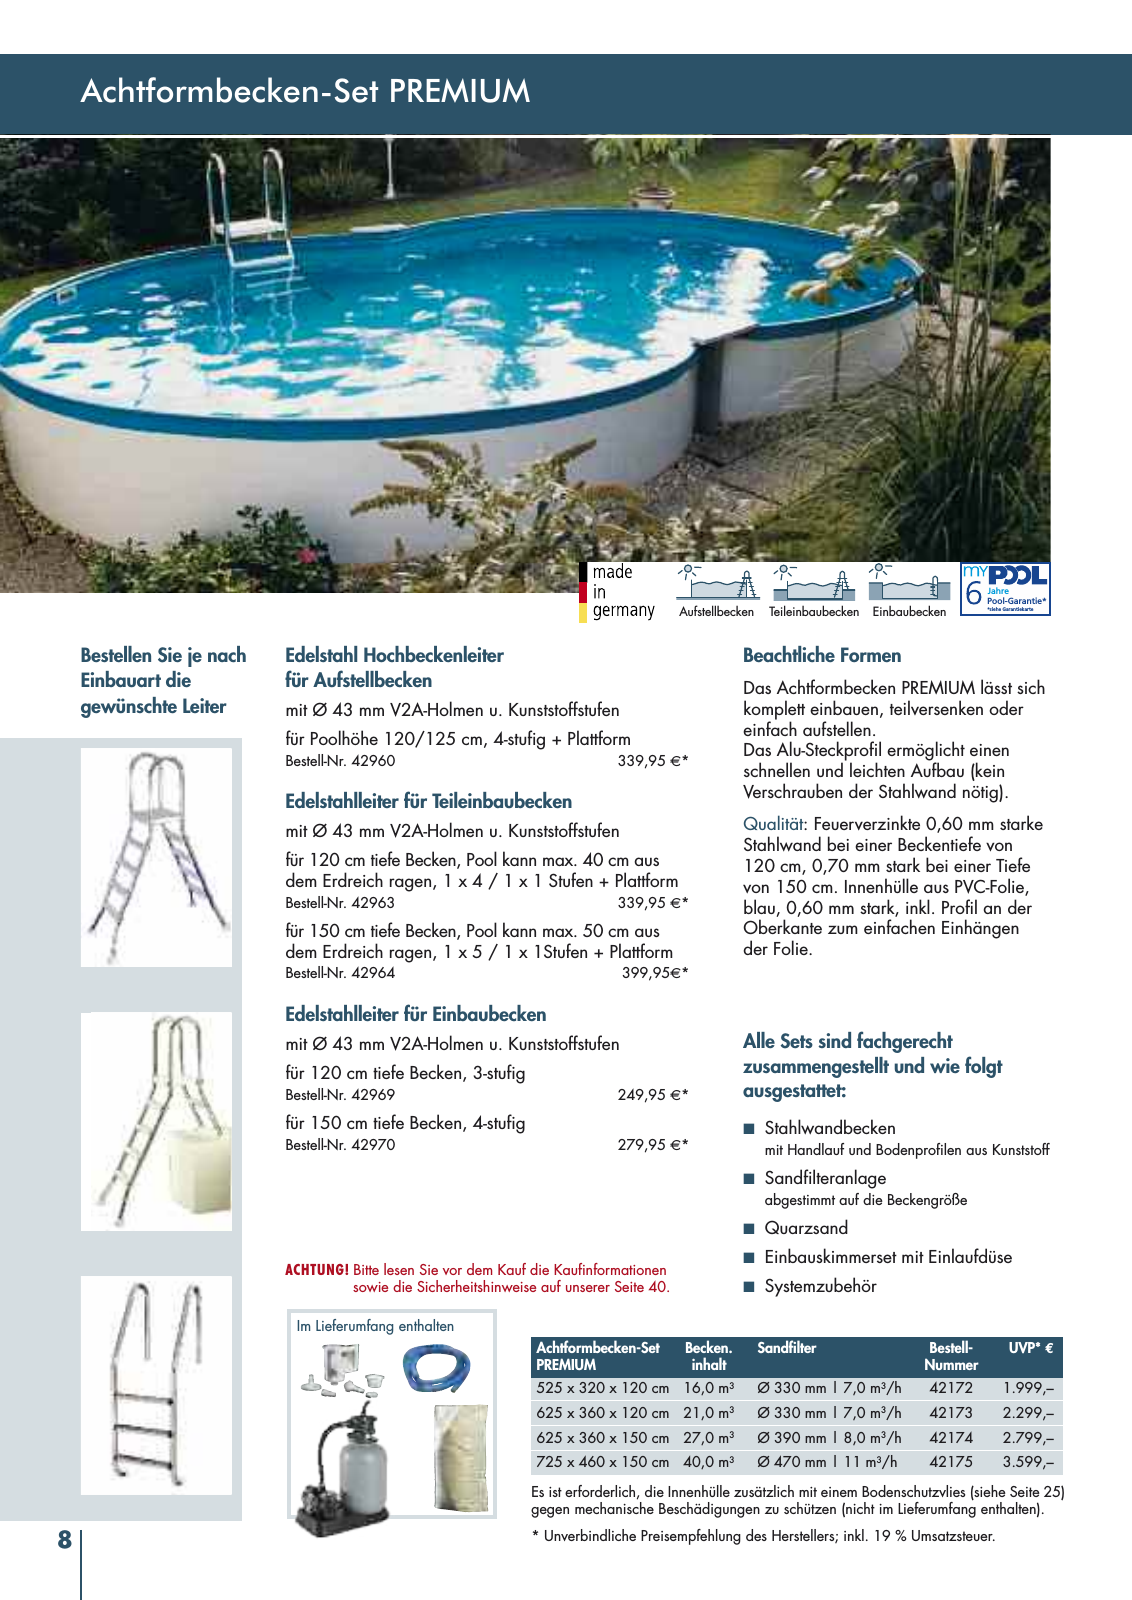 Vorschau myPool Schwimmbadkatalog 2016 Seite 8